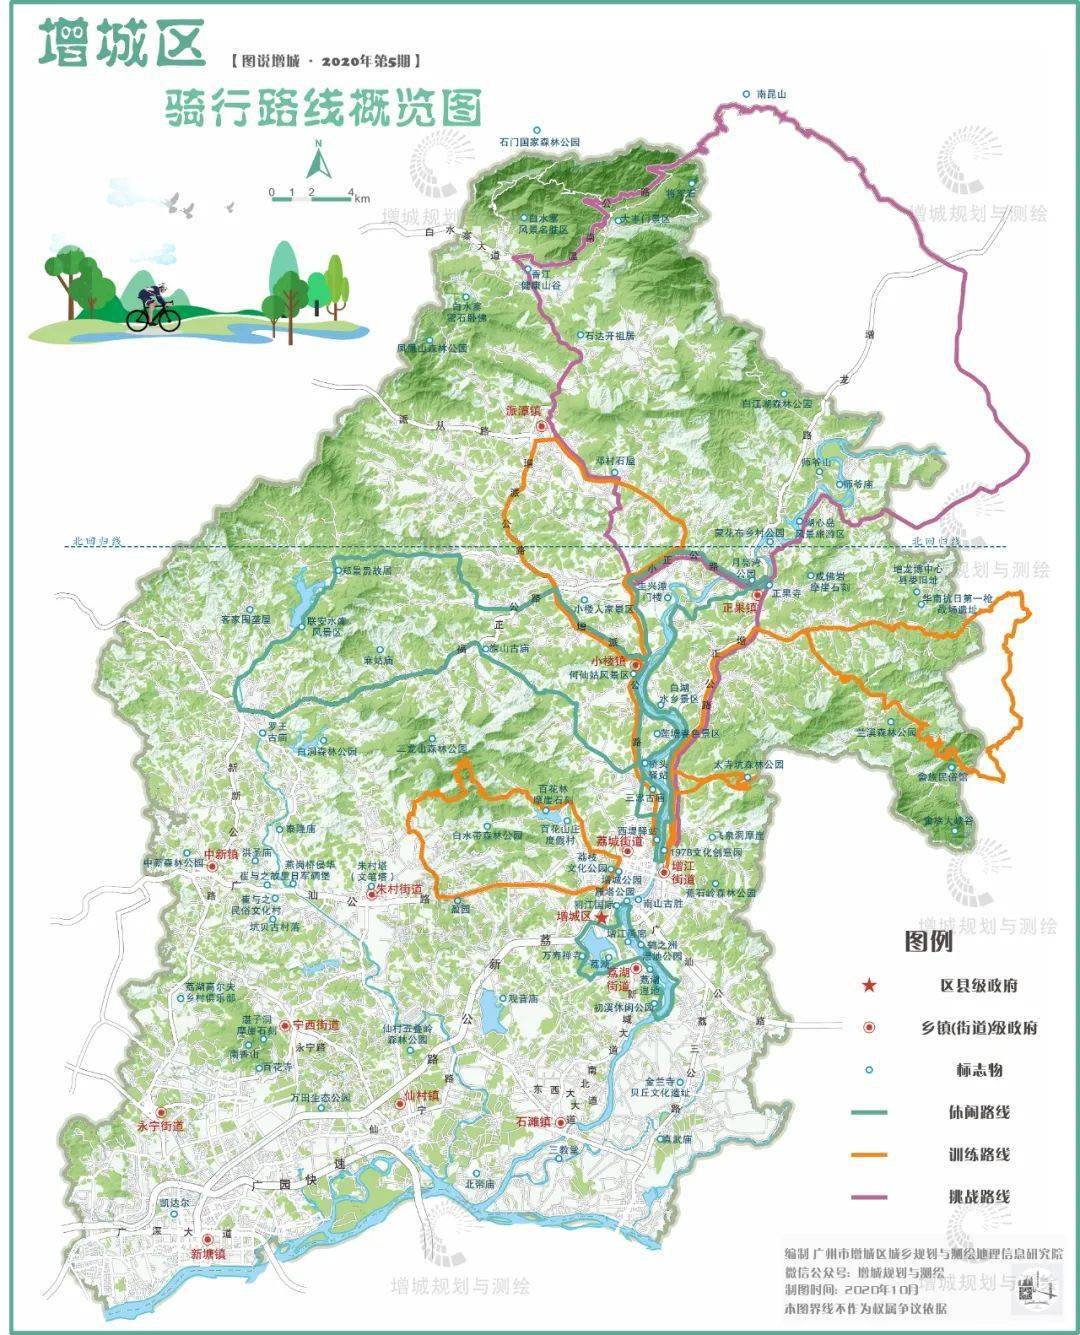 增城最美骑行地图出炉,8条线路穿行于绿水青山!